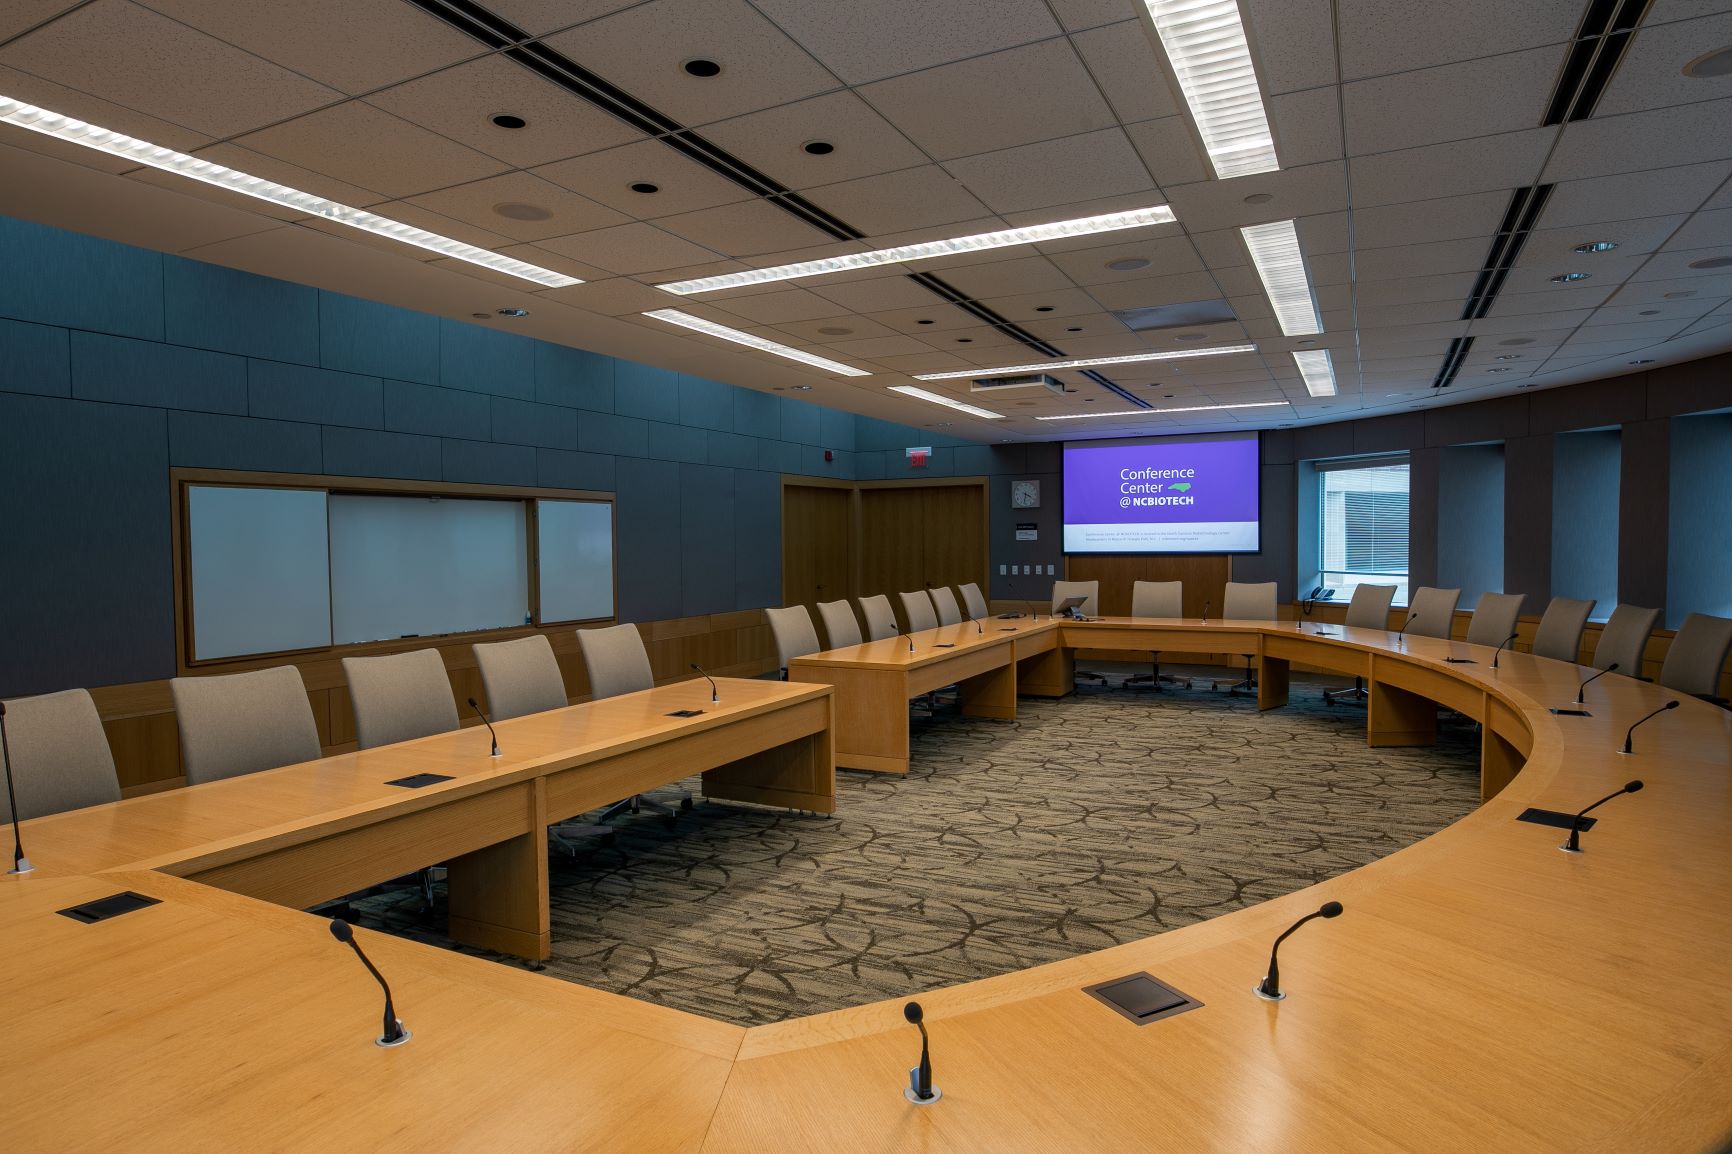 Board of directors room